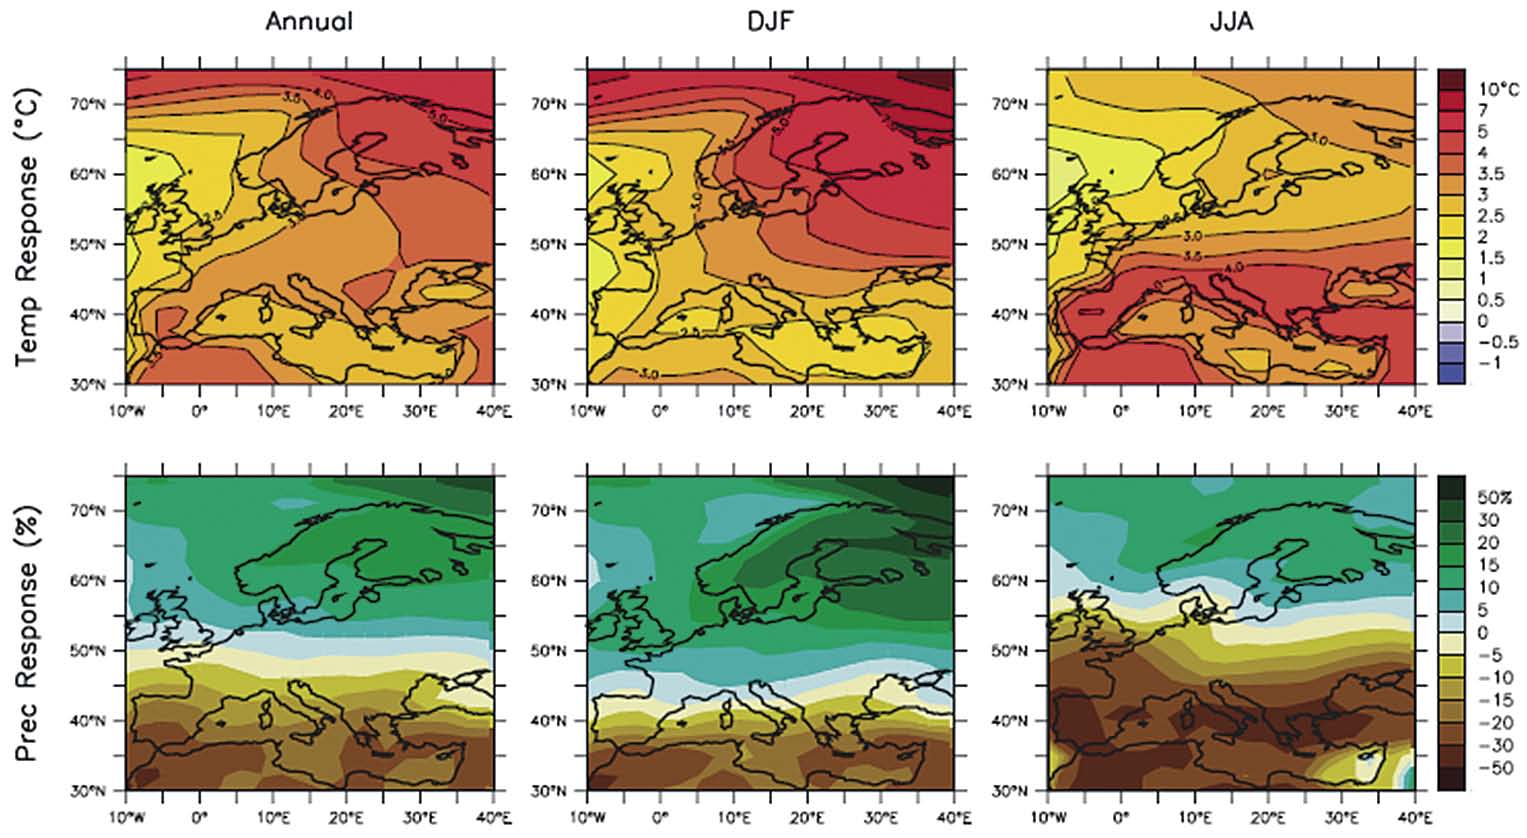 76 Η Ζωή Μας με τις Δασικές Πυρκαγιές: Η Άποψη της Επιστήμης Εικόνα 19. Προσομοίωση μεταβολών θερμοκρασίας και κατακρημνισμάτων στην Ευρώπη για το Α1Β σενάριο.